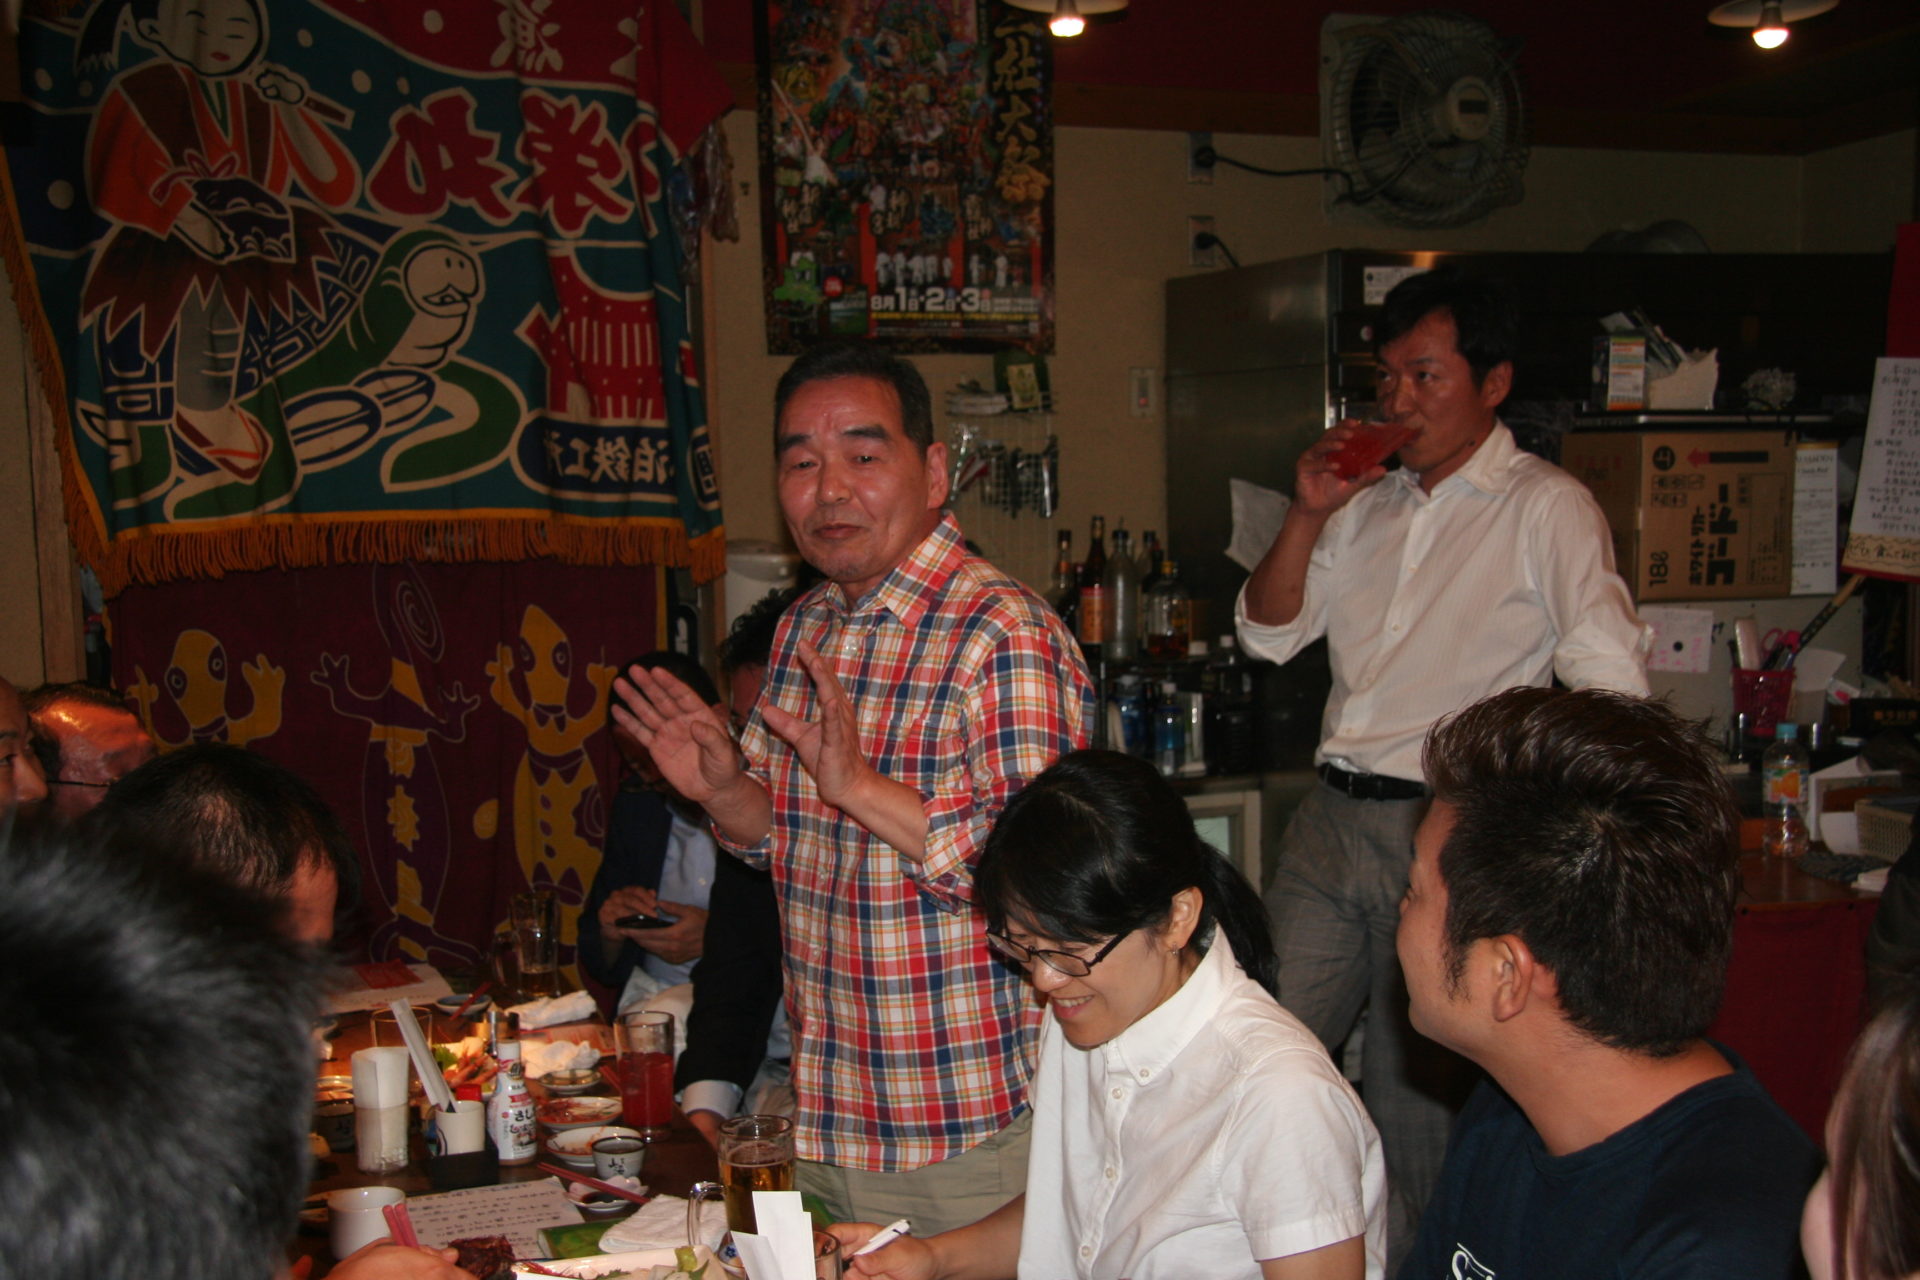 IMG 8947 1920x1280 - 2015年6月15日 AOsuki定例飲み会開催しました。